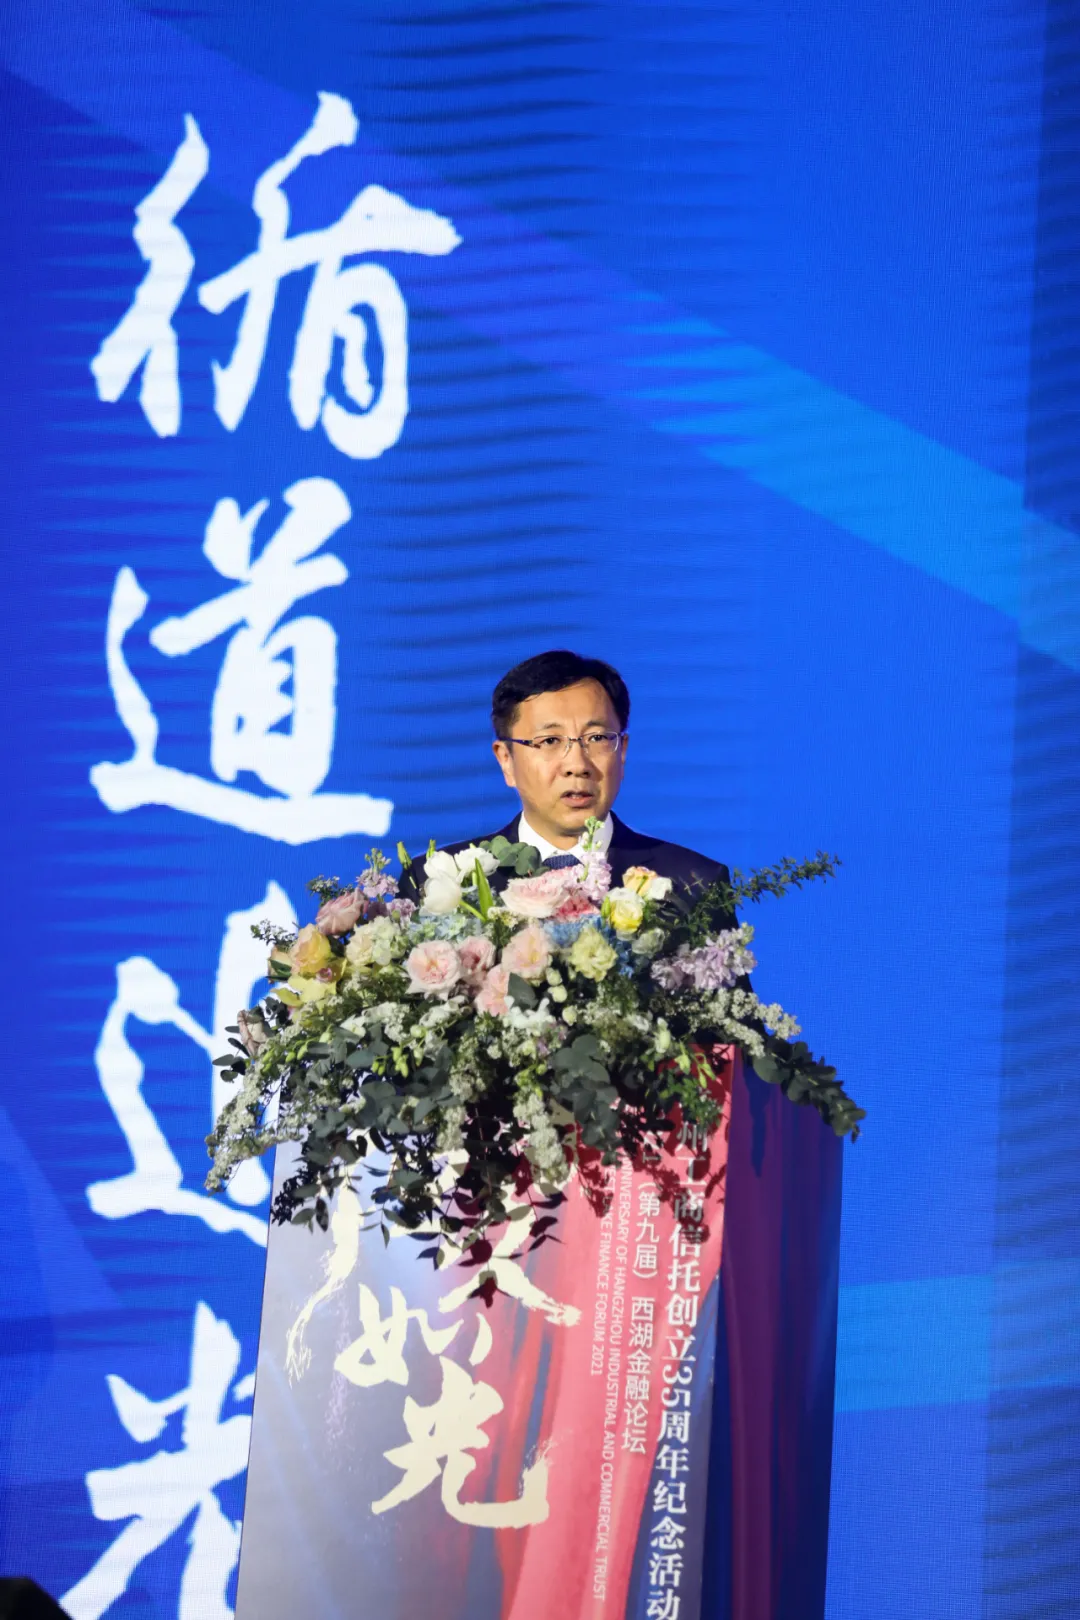 杭州工商信托35周年纪念活动暨西湖金融论坛成功举办